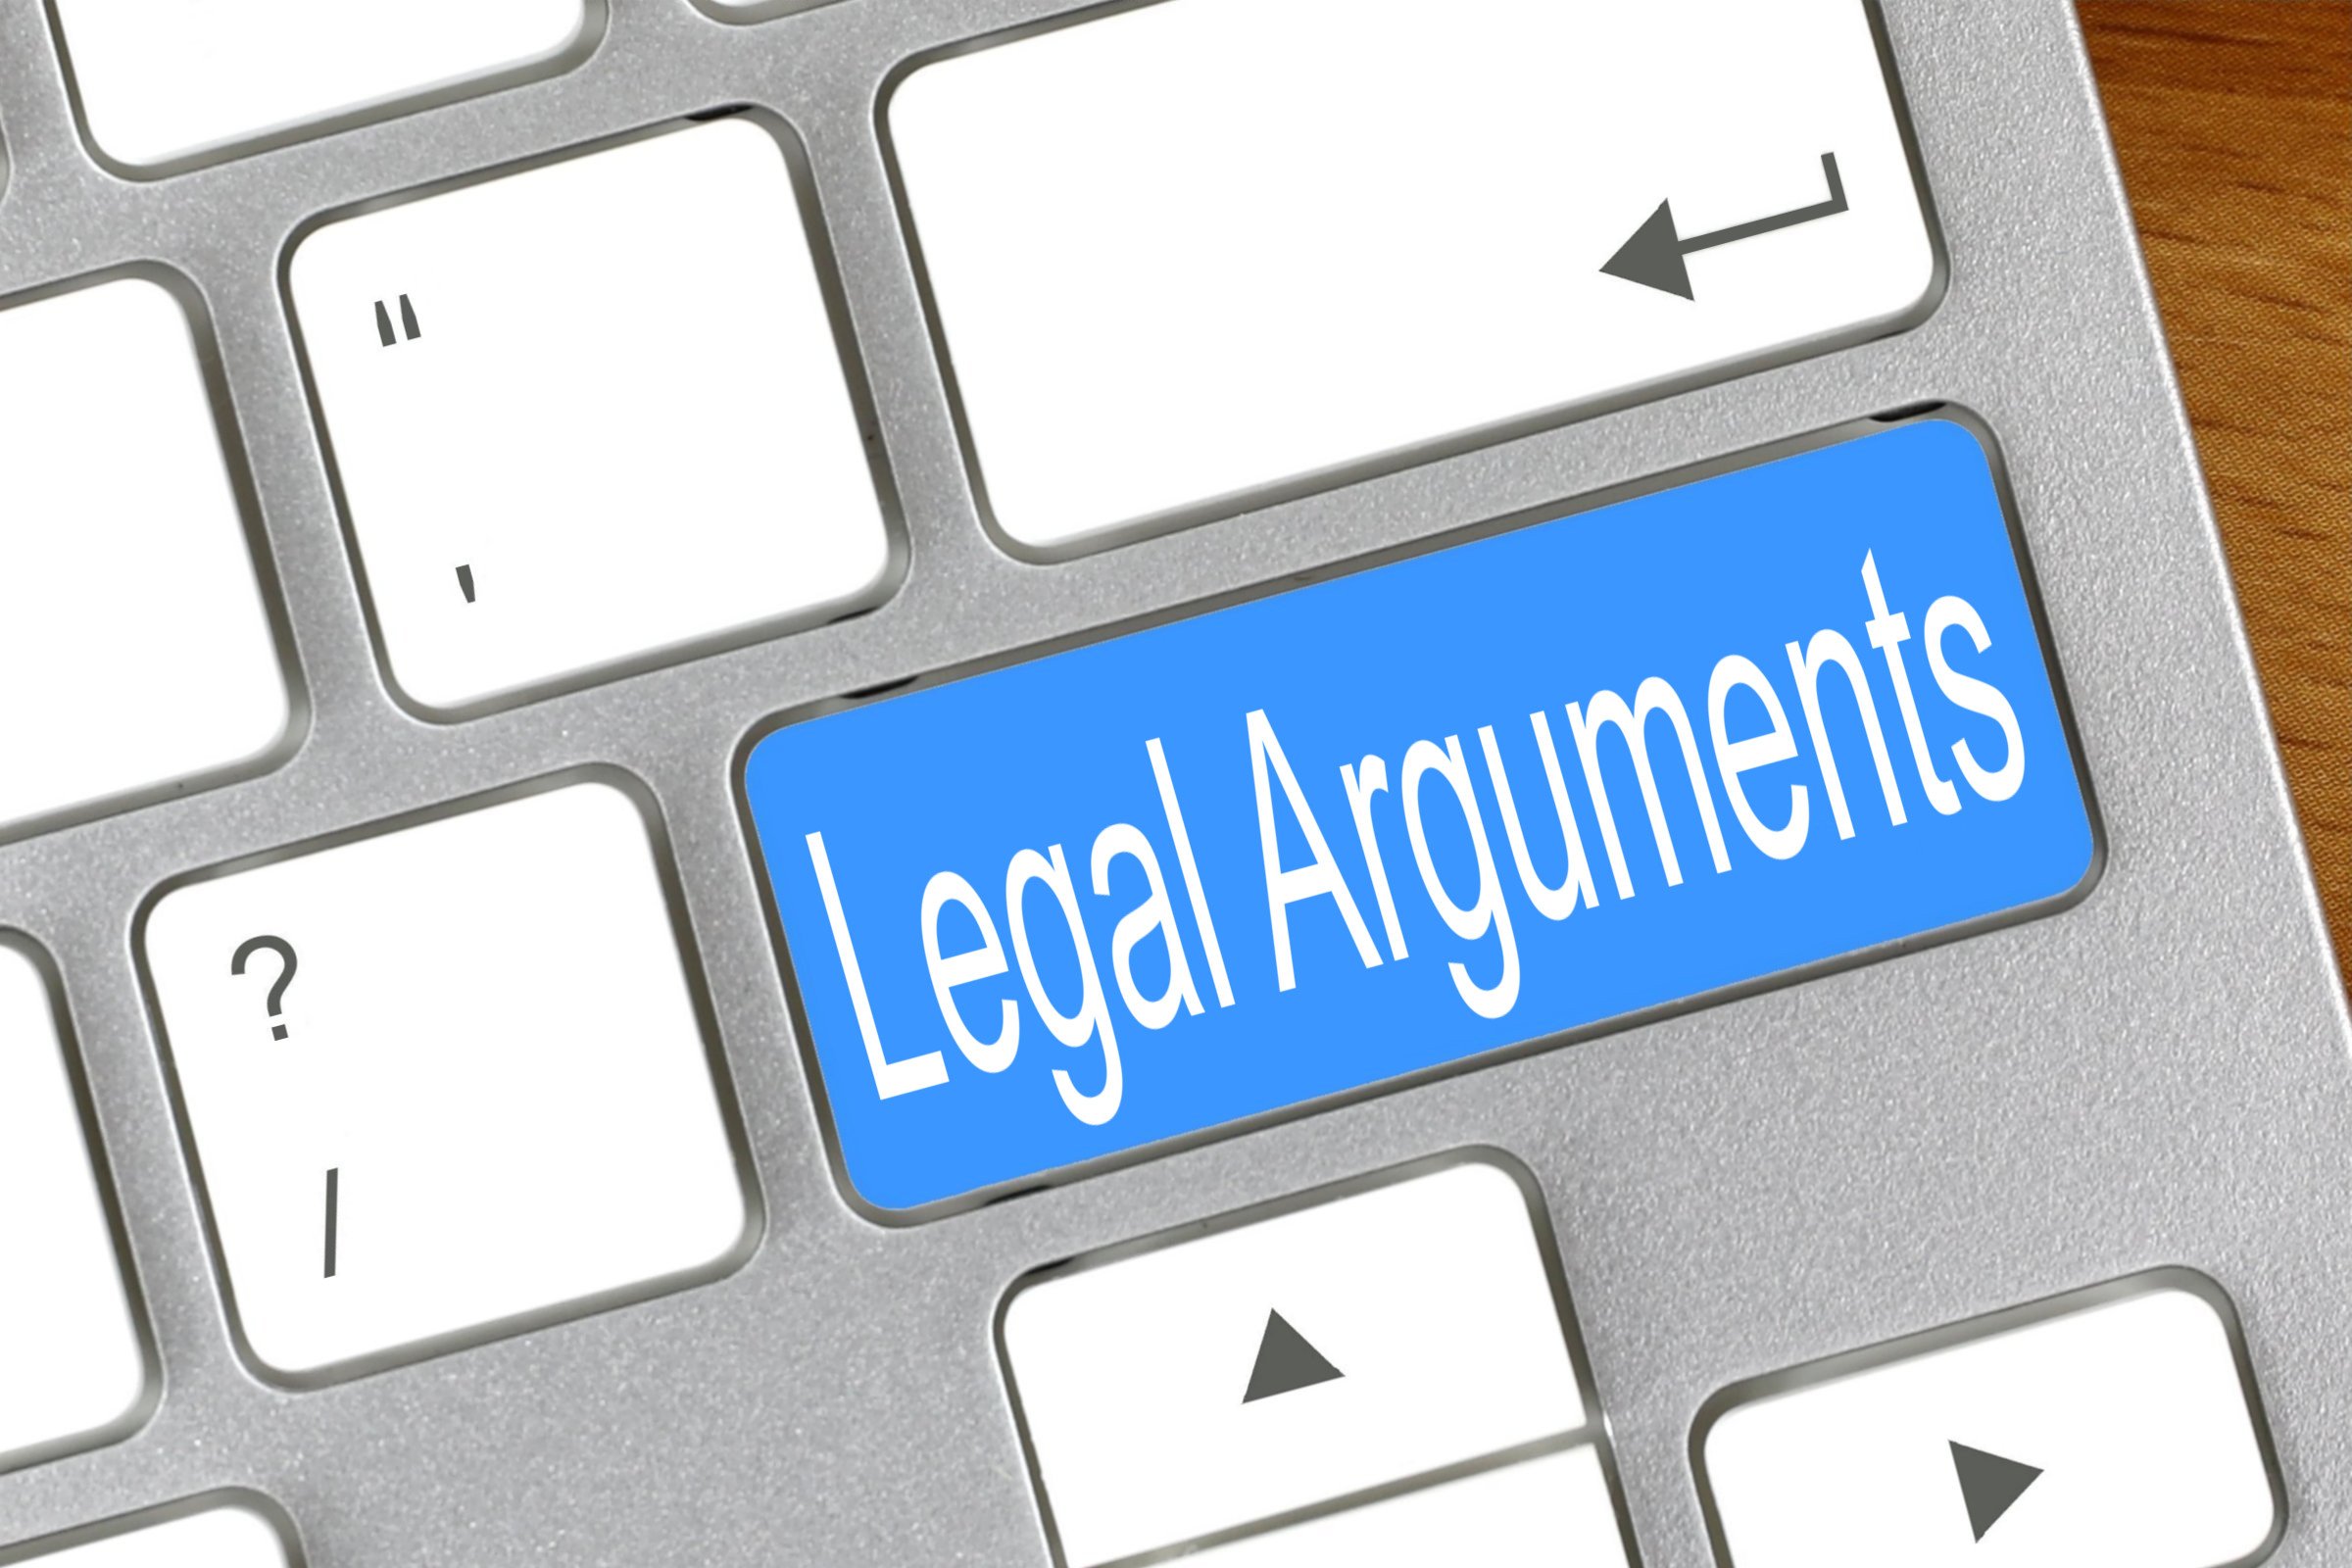 legal arguments